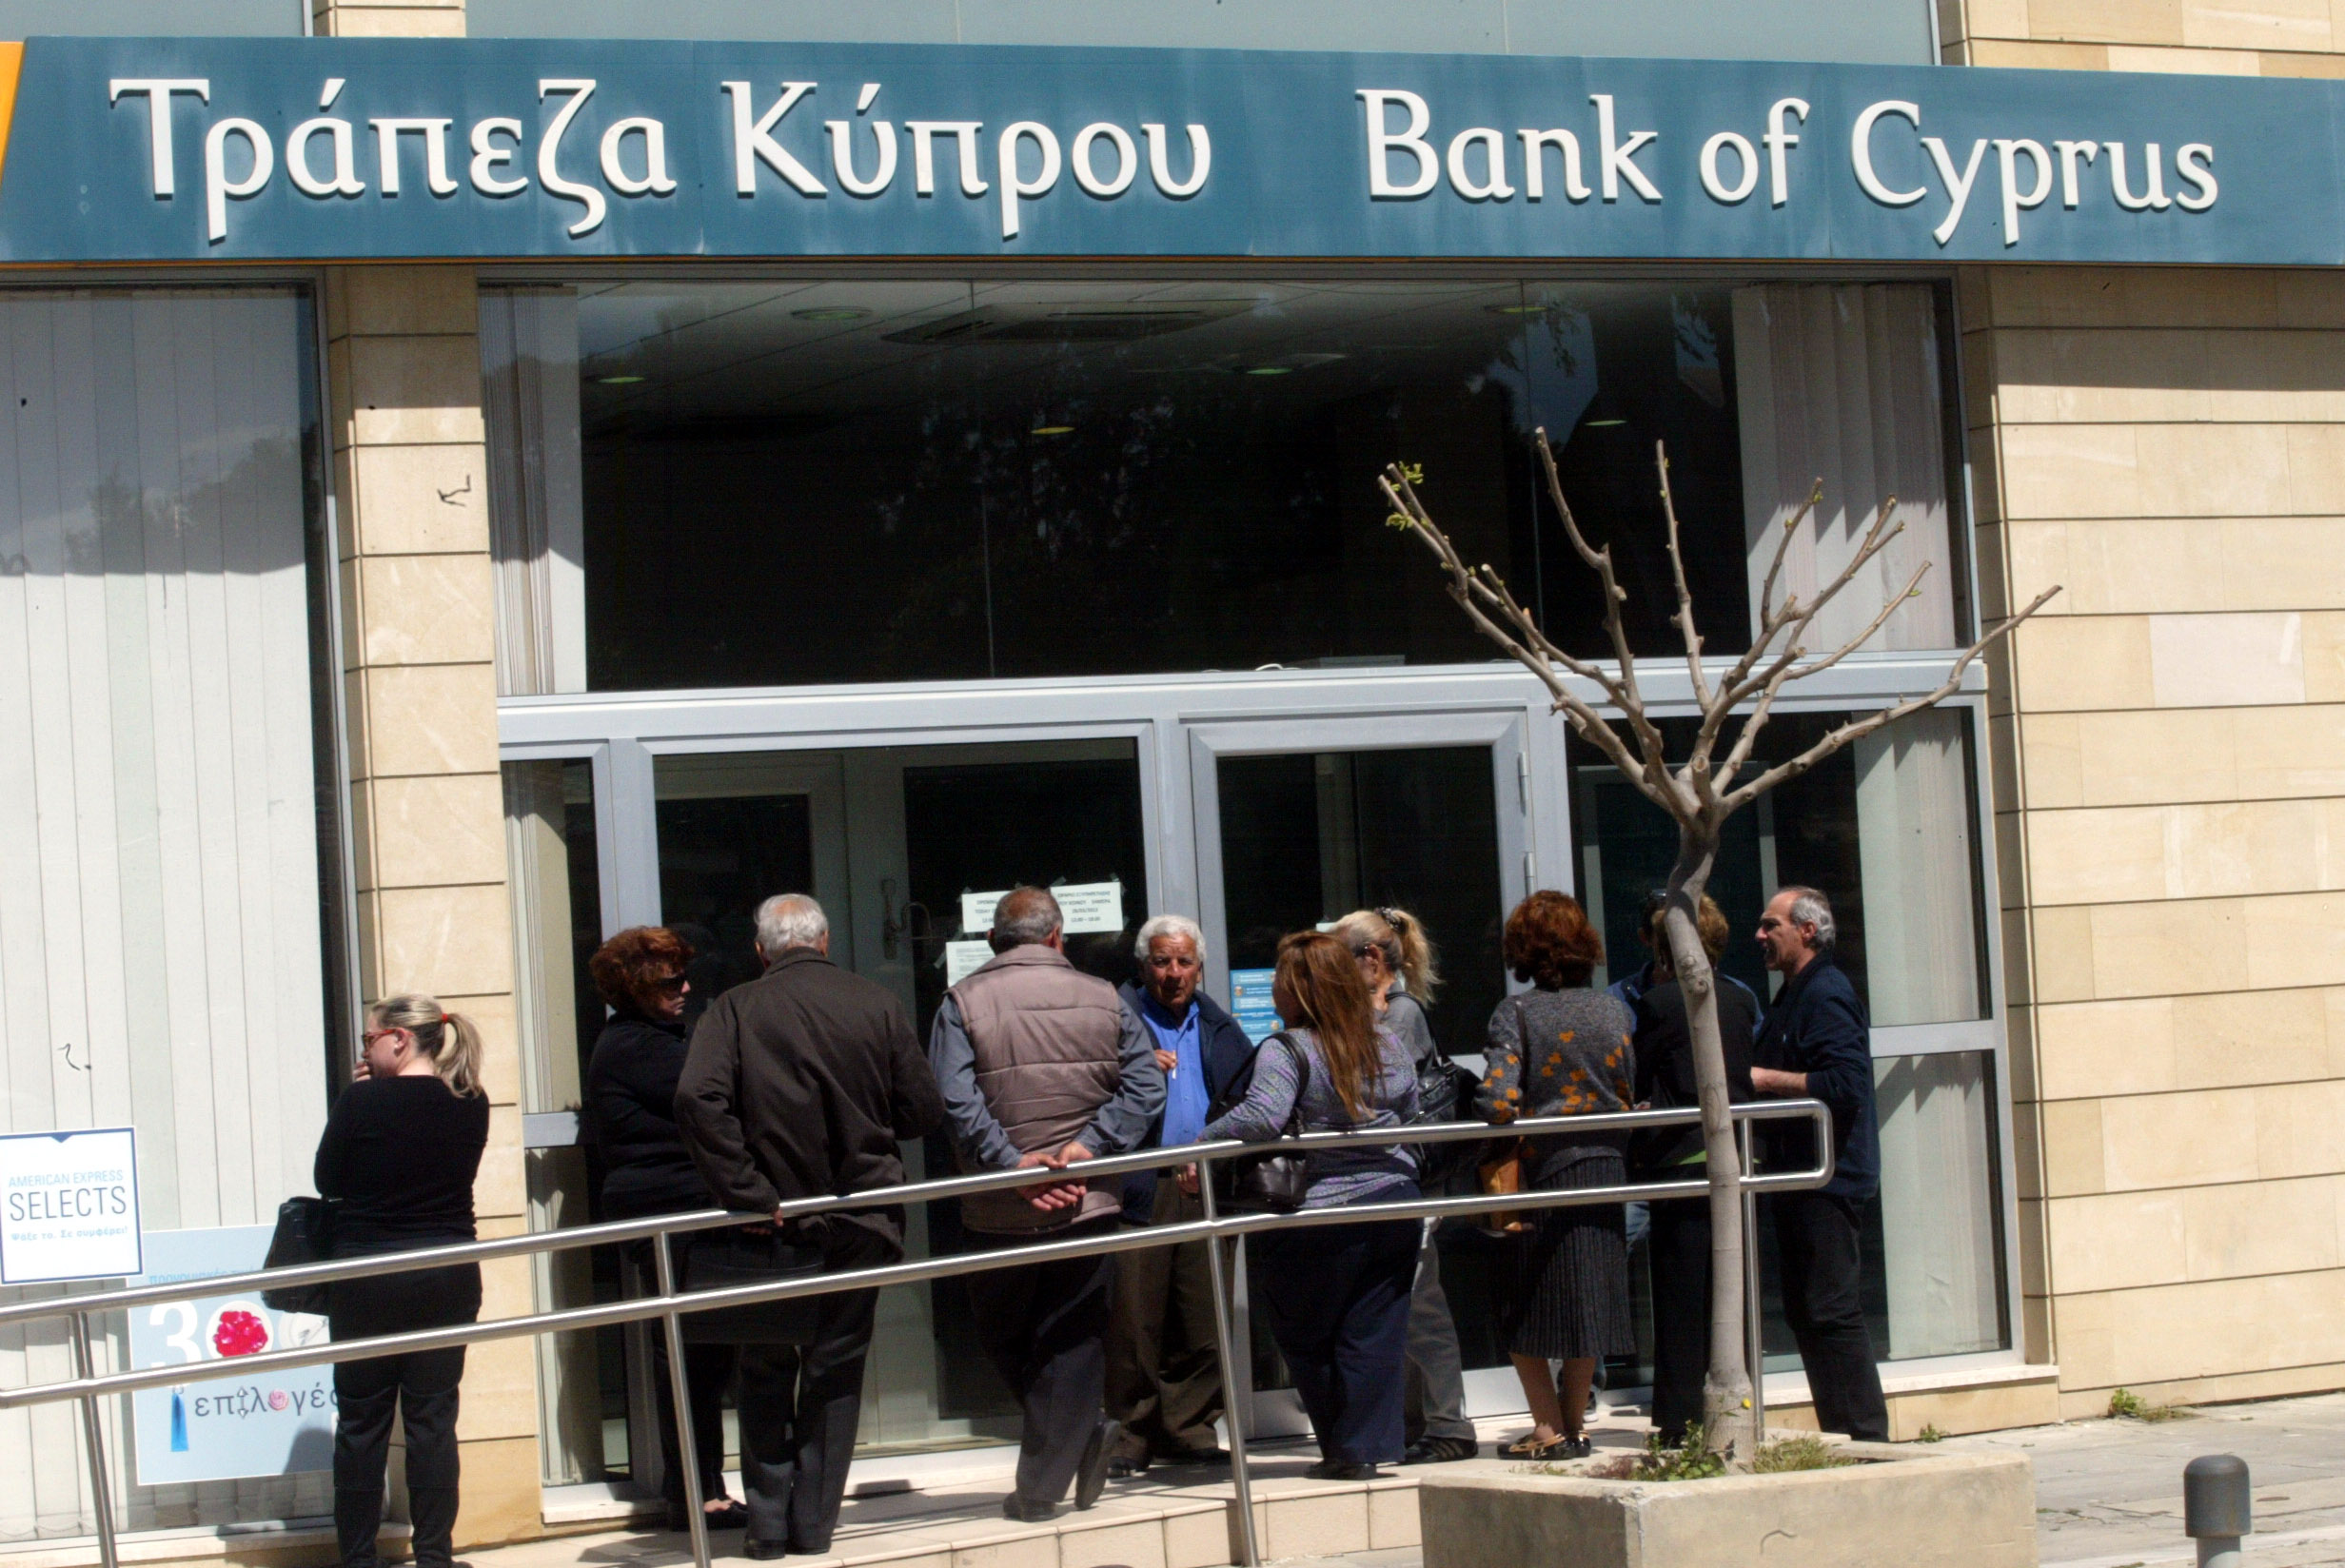 Κύπρος: Συζητείται στη Βουλή η λίστα για τις εκροές καταθέσεων